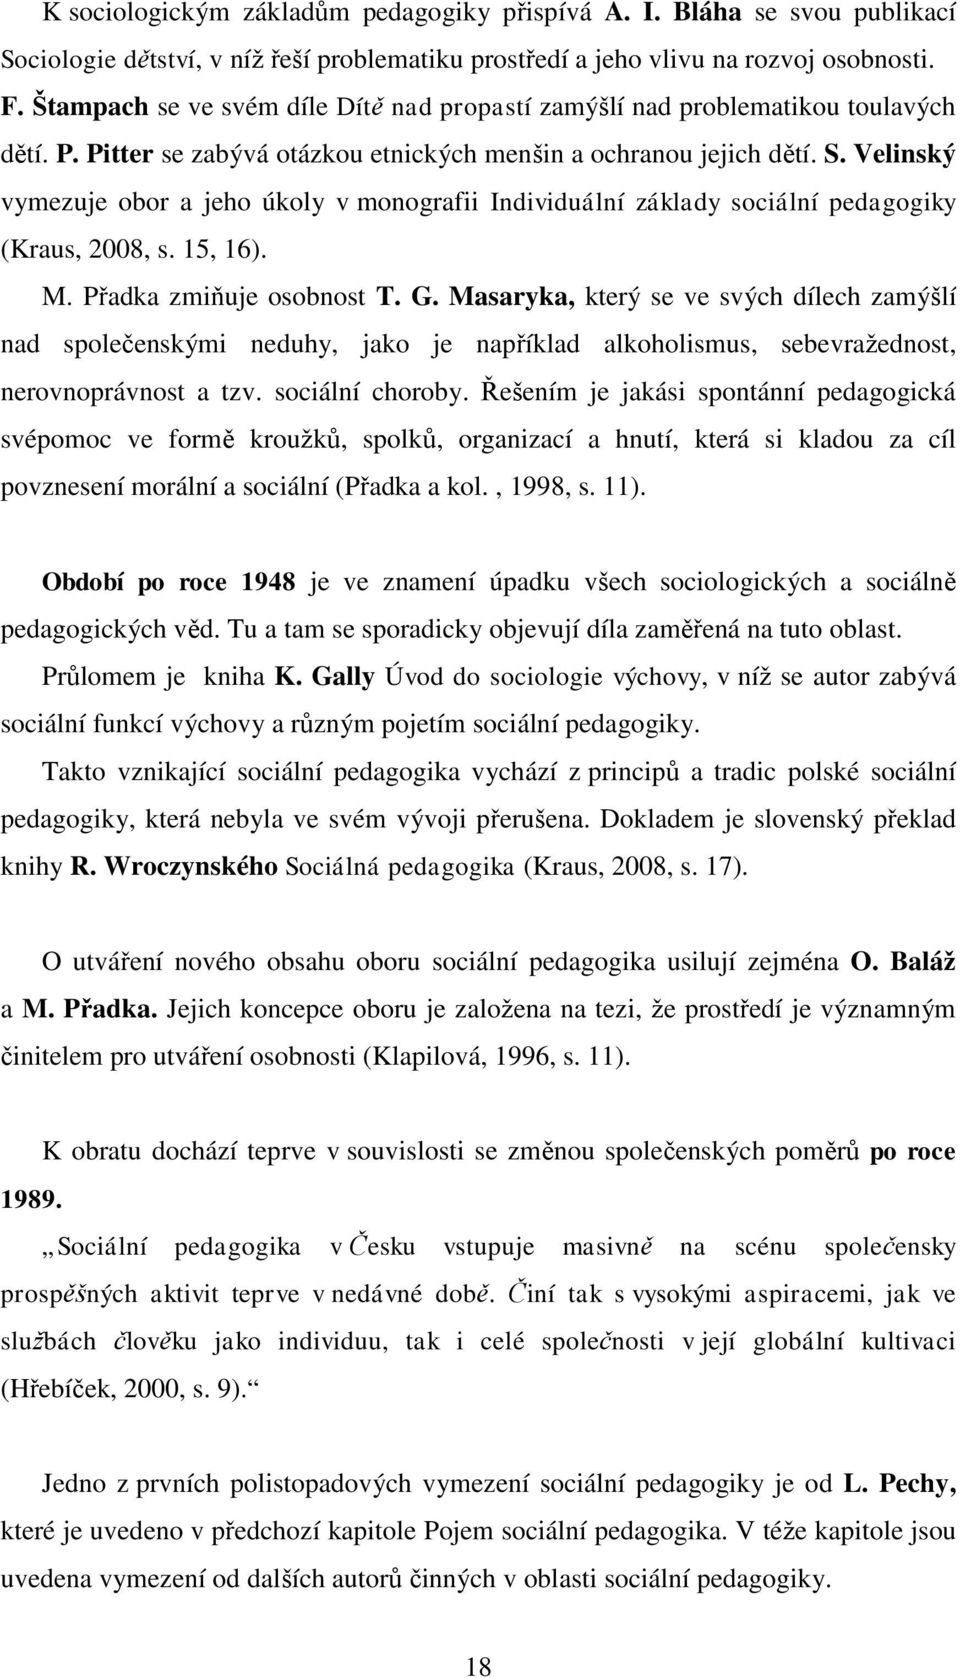 Velinský vymezuje obor a jeho úkoly v monografii Individuální základy sociální pedagogiky (Kraus, 2008, s. 15, 16). M. Přadka zmiňuje osobnost T. G.